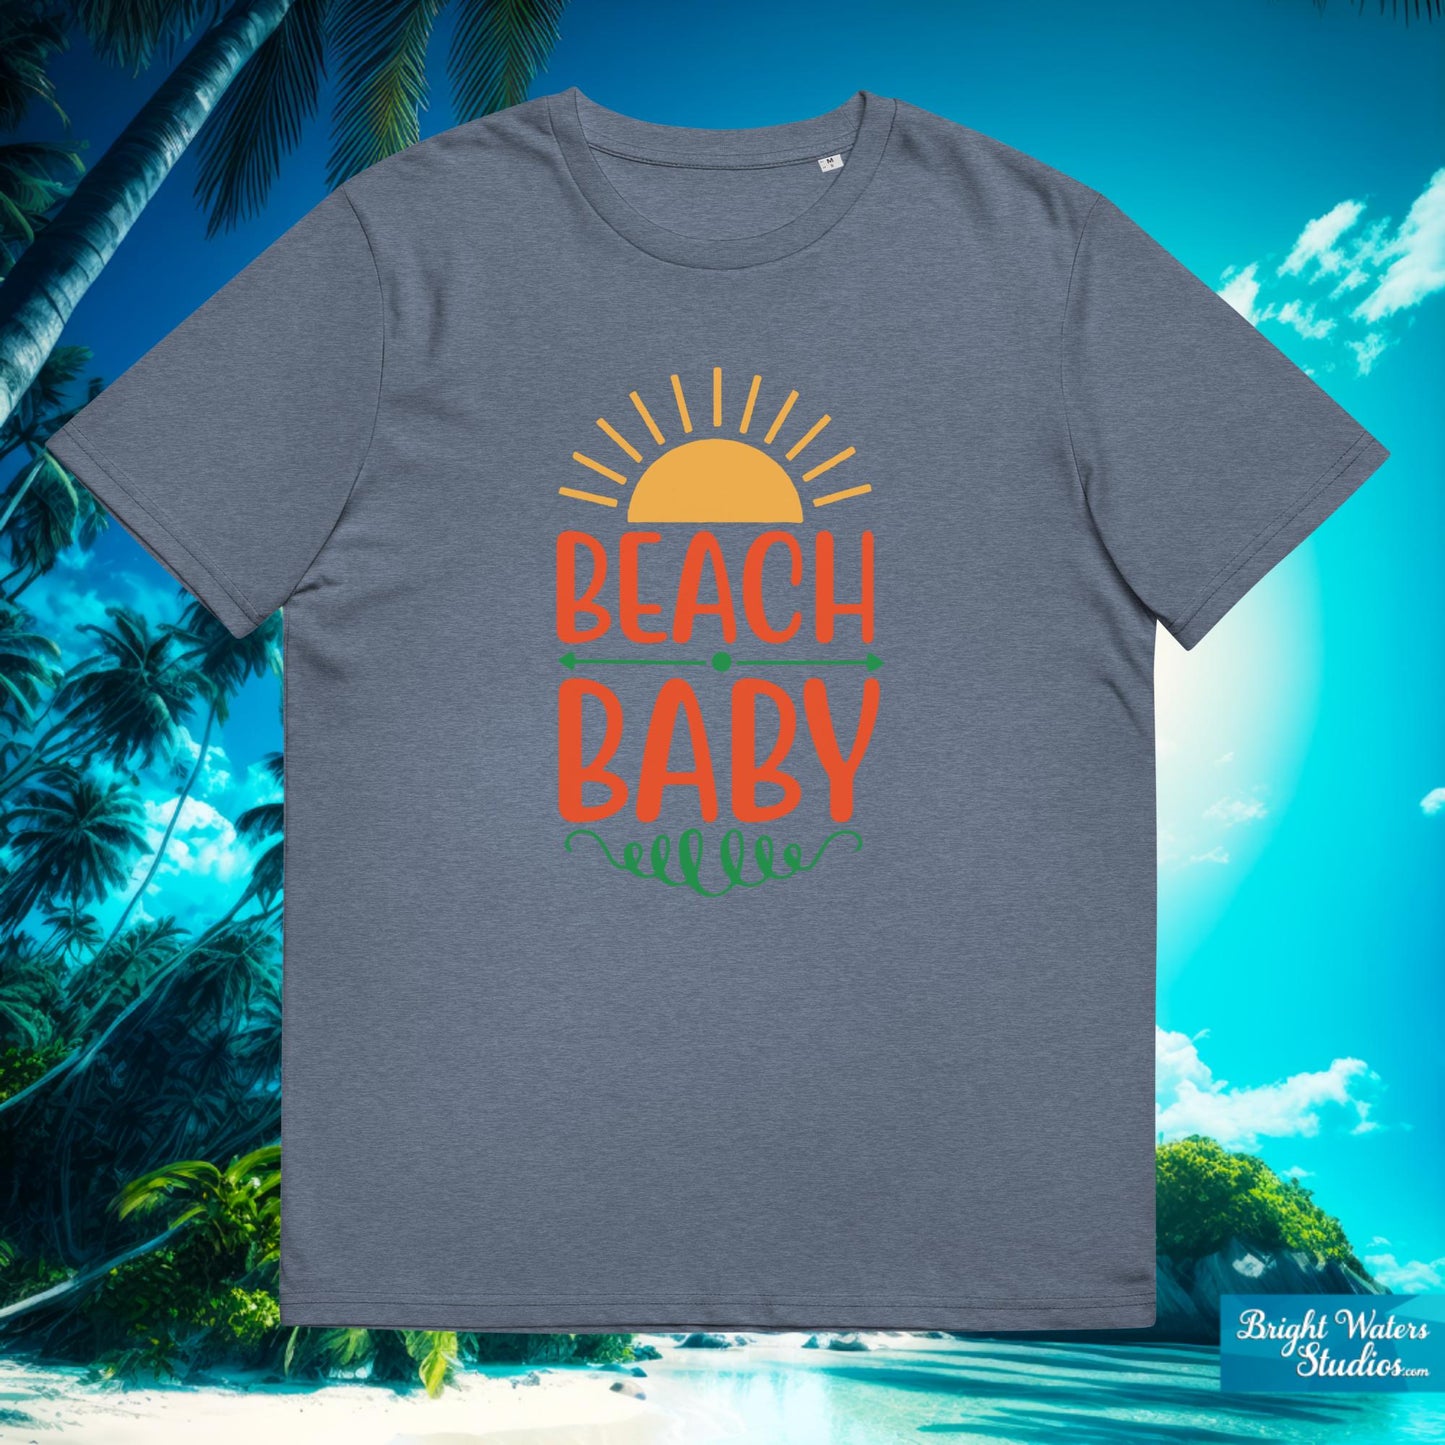 Beach Baby T-Shirt